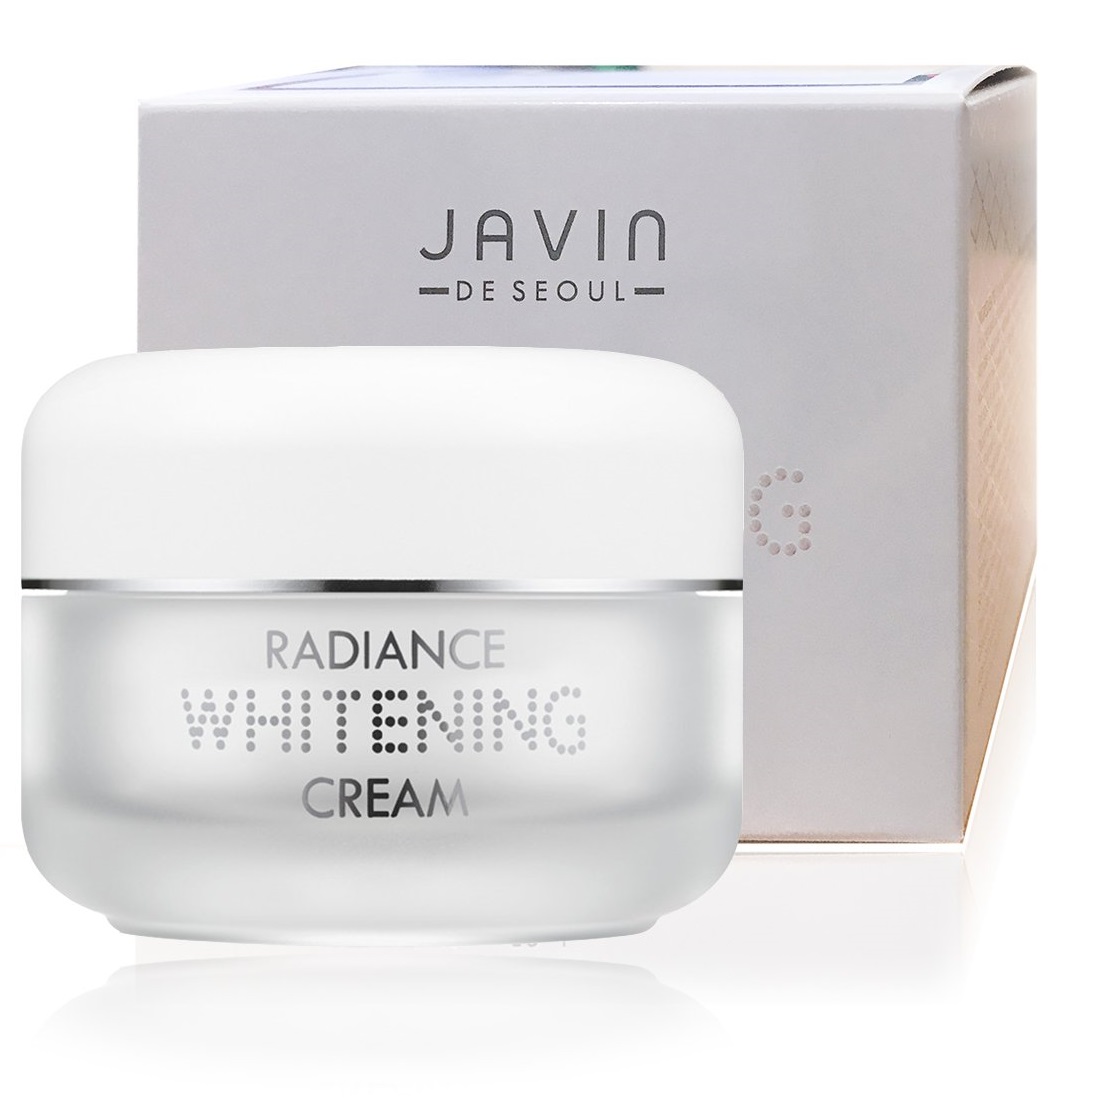 Kem dưỡng trắng da Javin Whitening Cream  Hàn quốc 50g kèm nơ  javin De Seoul Radiance Whitening Cream 50g